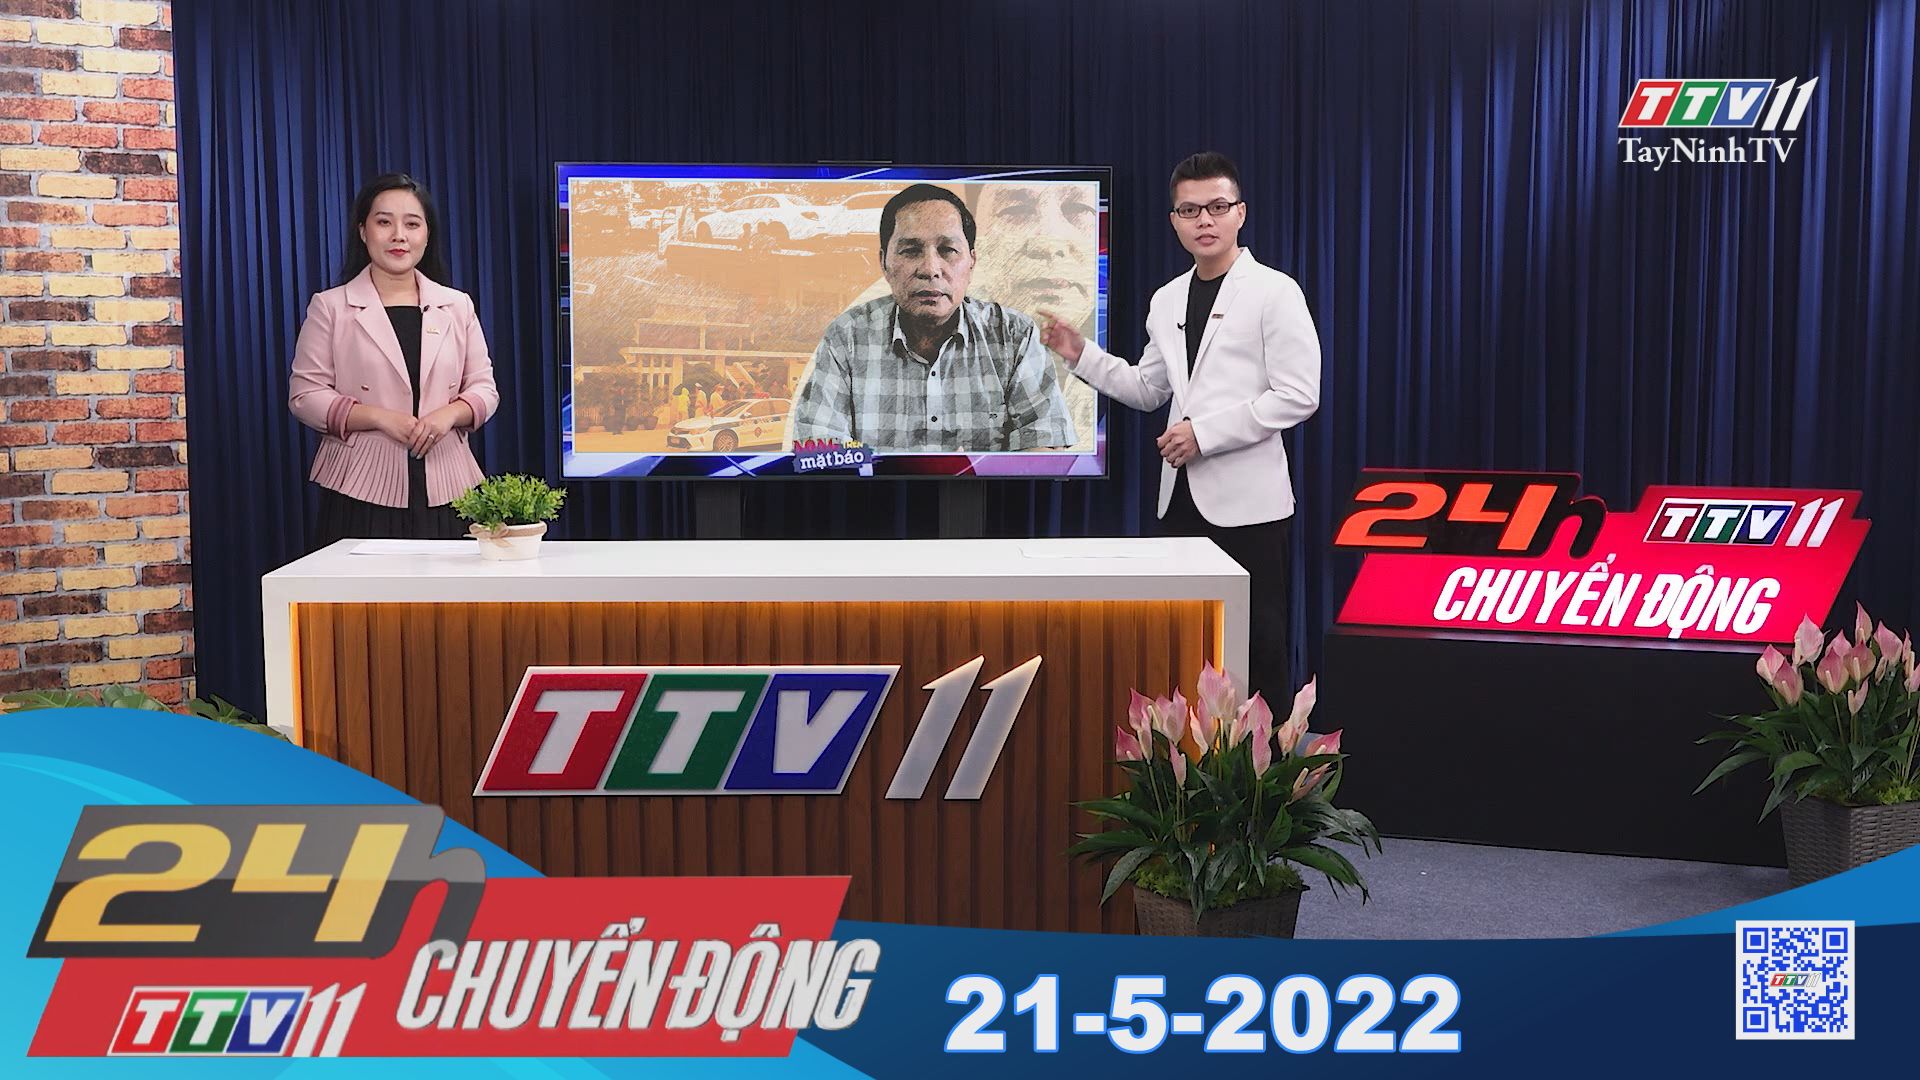 24h Chuyển động 21-5-2022 | Tin tức hôm nay | TayNinhTV